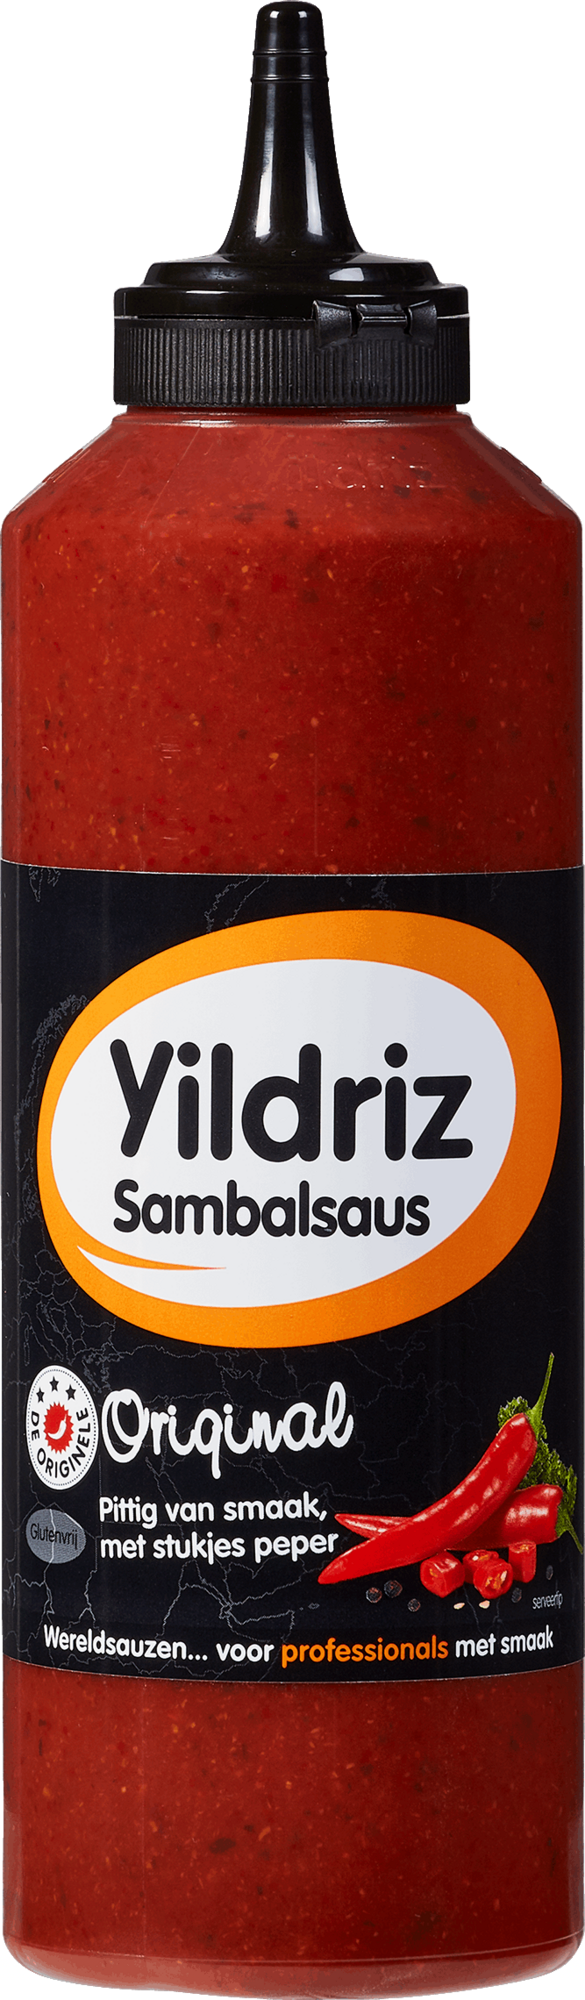 63289 Original sambal saus 1x535 ml